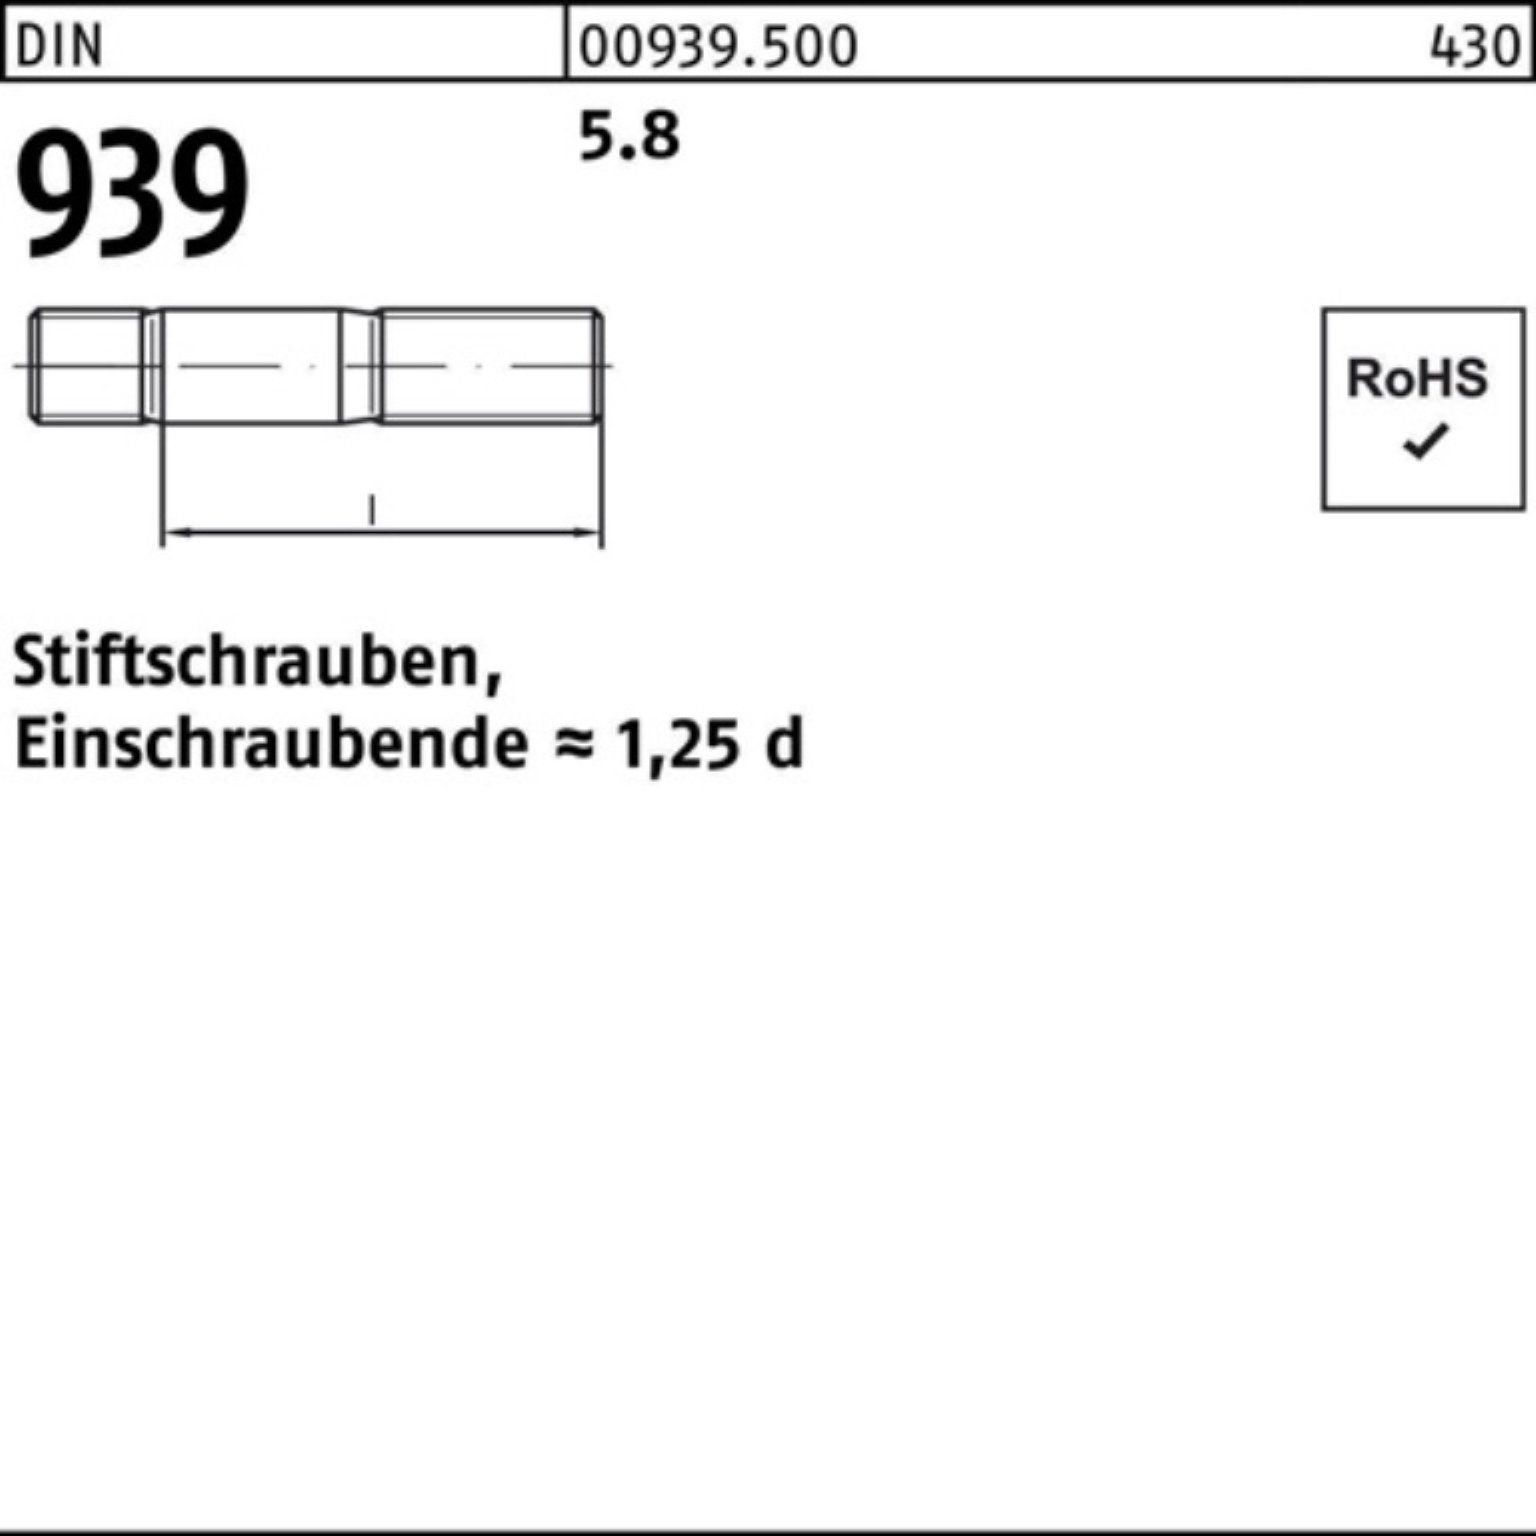 939 100er Stiftschraube 5.8 DIN 25 Pack 130 Einschraubende=1,25d Stiftschraube Reyher M12x